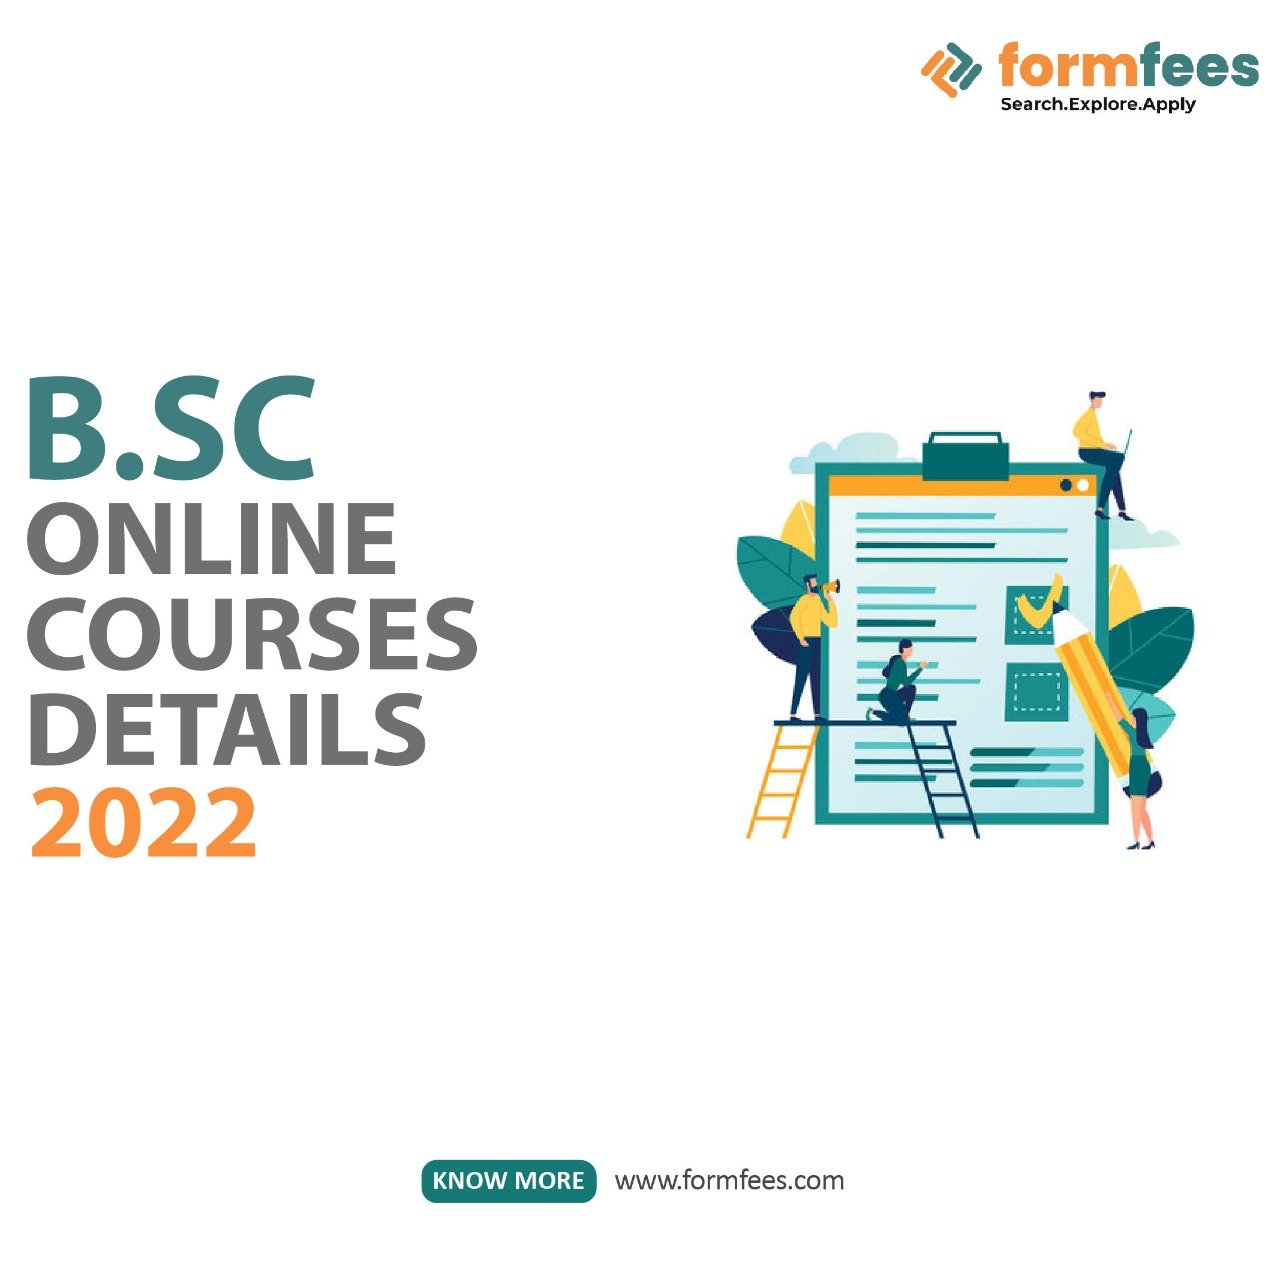 BSc Online Courses Details 2022